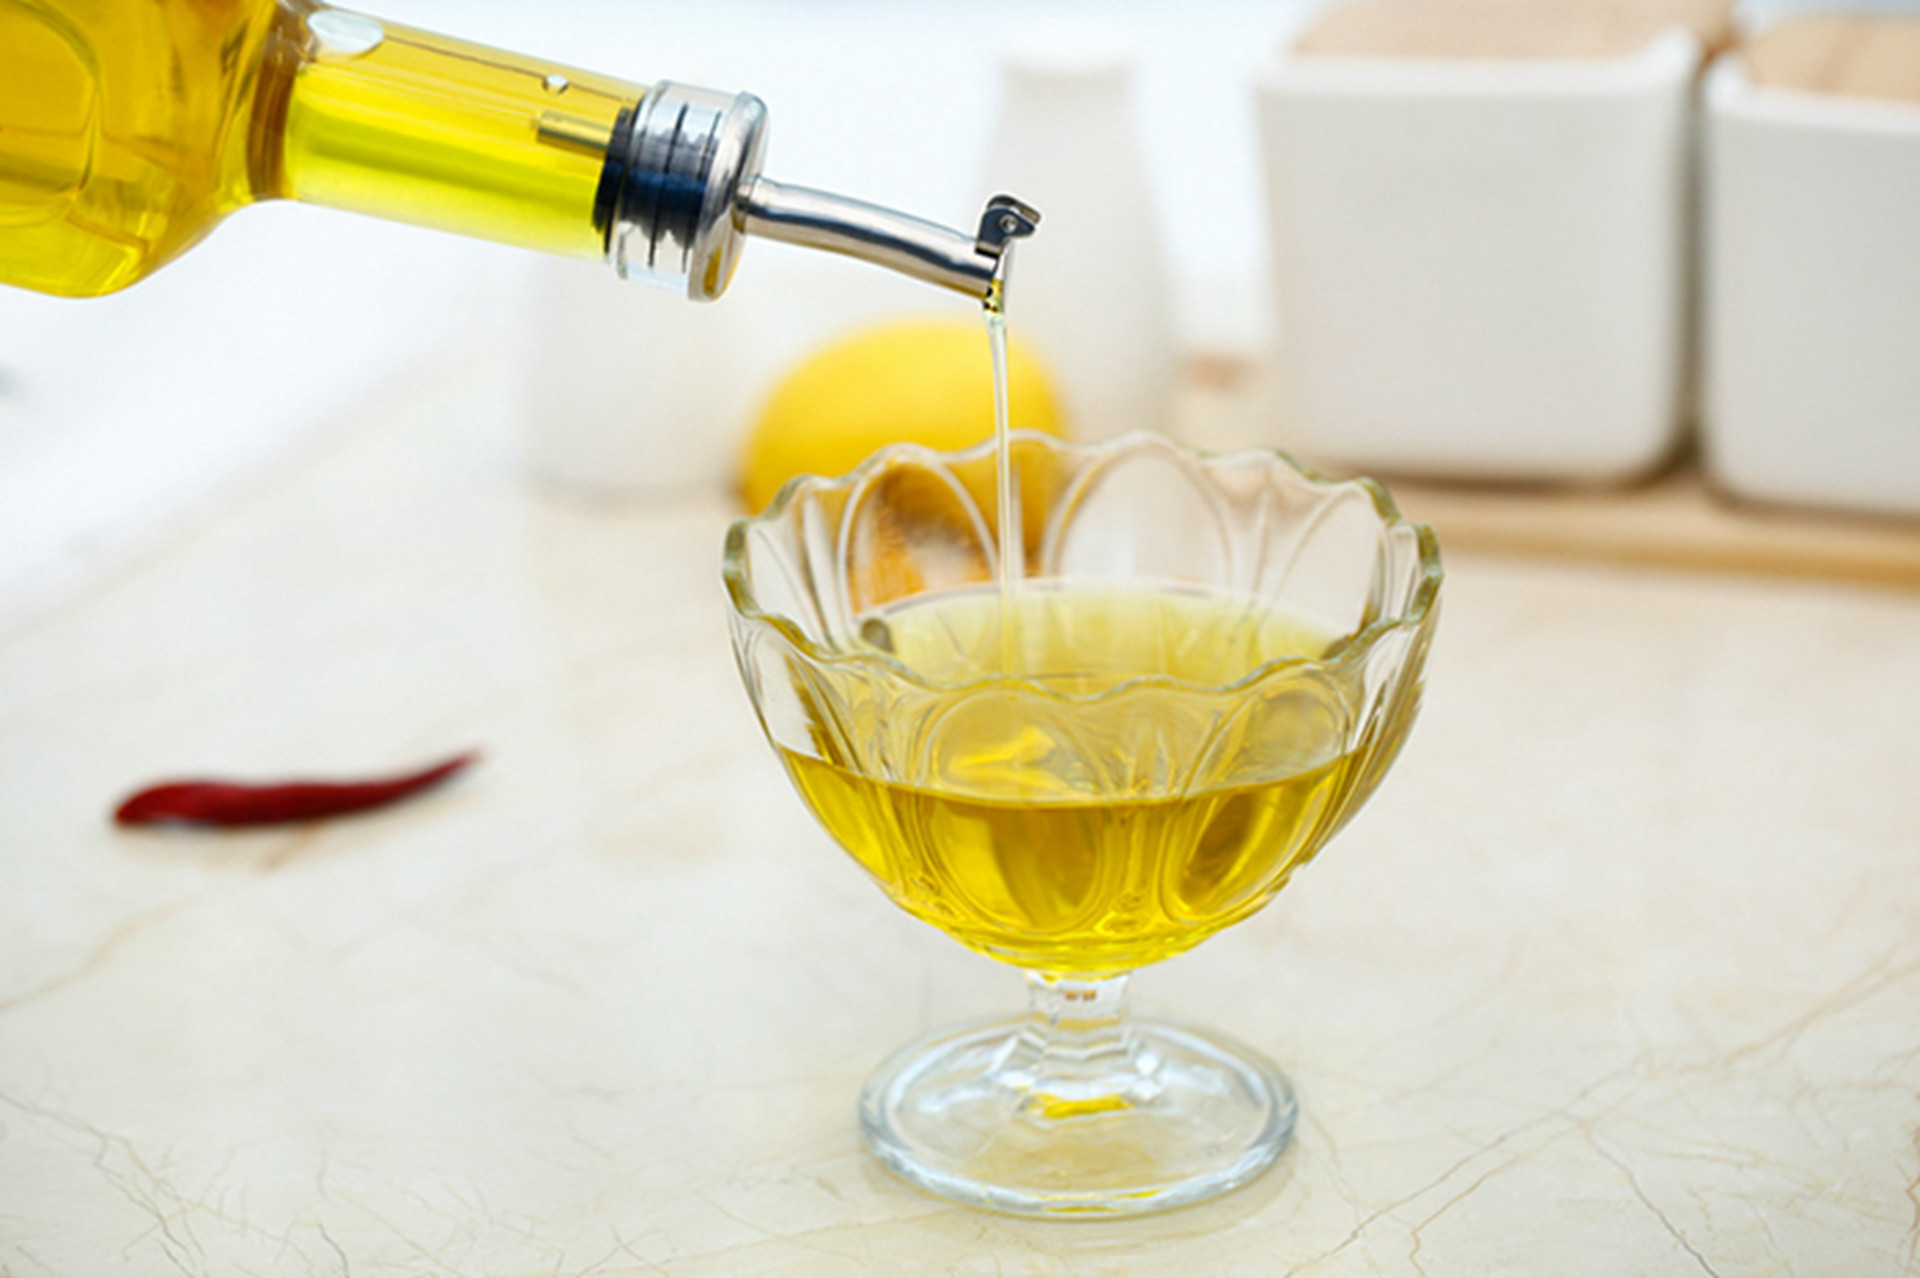 橄榄油热量高为什么能减肥